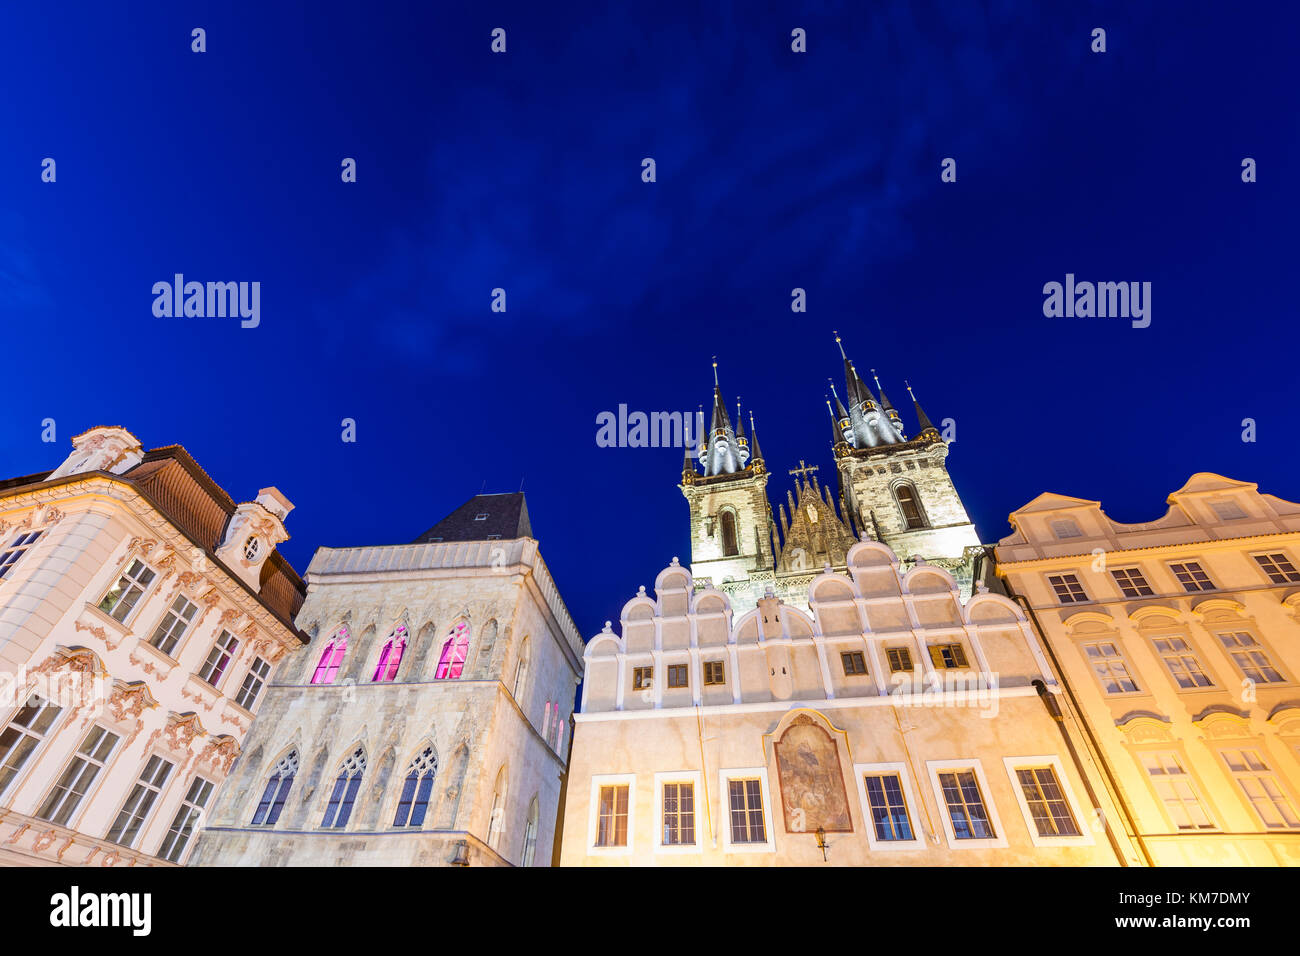 Tschechien, Prag, Altstadt, Altstädter Ring, Palais Kinsky, Haus zur Steinernen Glocke, Kunstgalerie Prag, Teynkirche Stock Photo